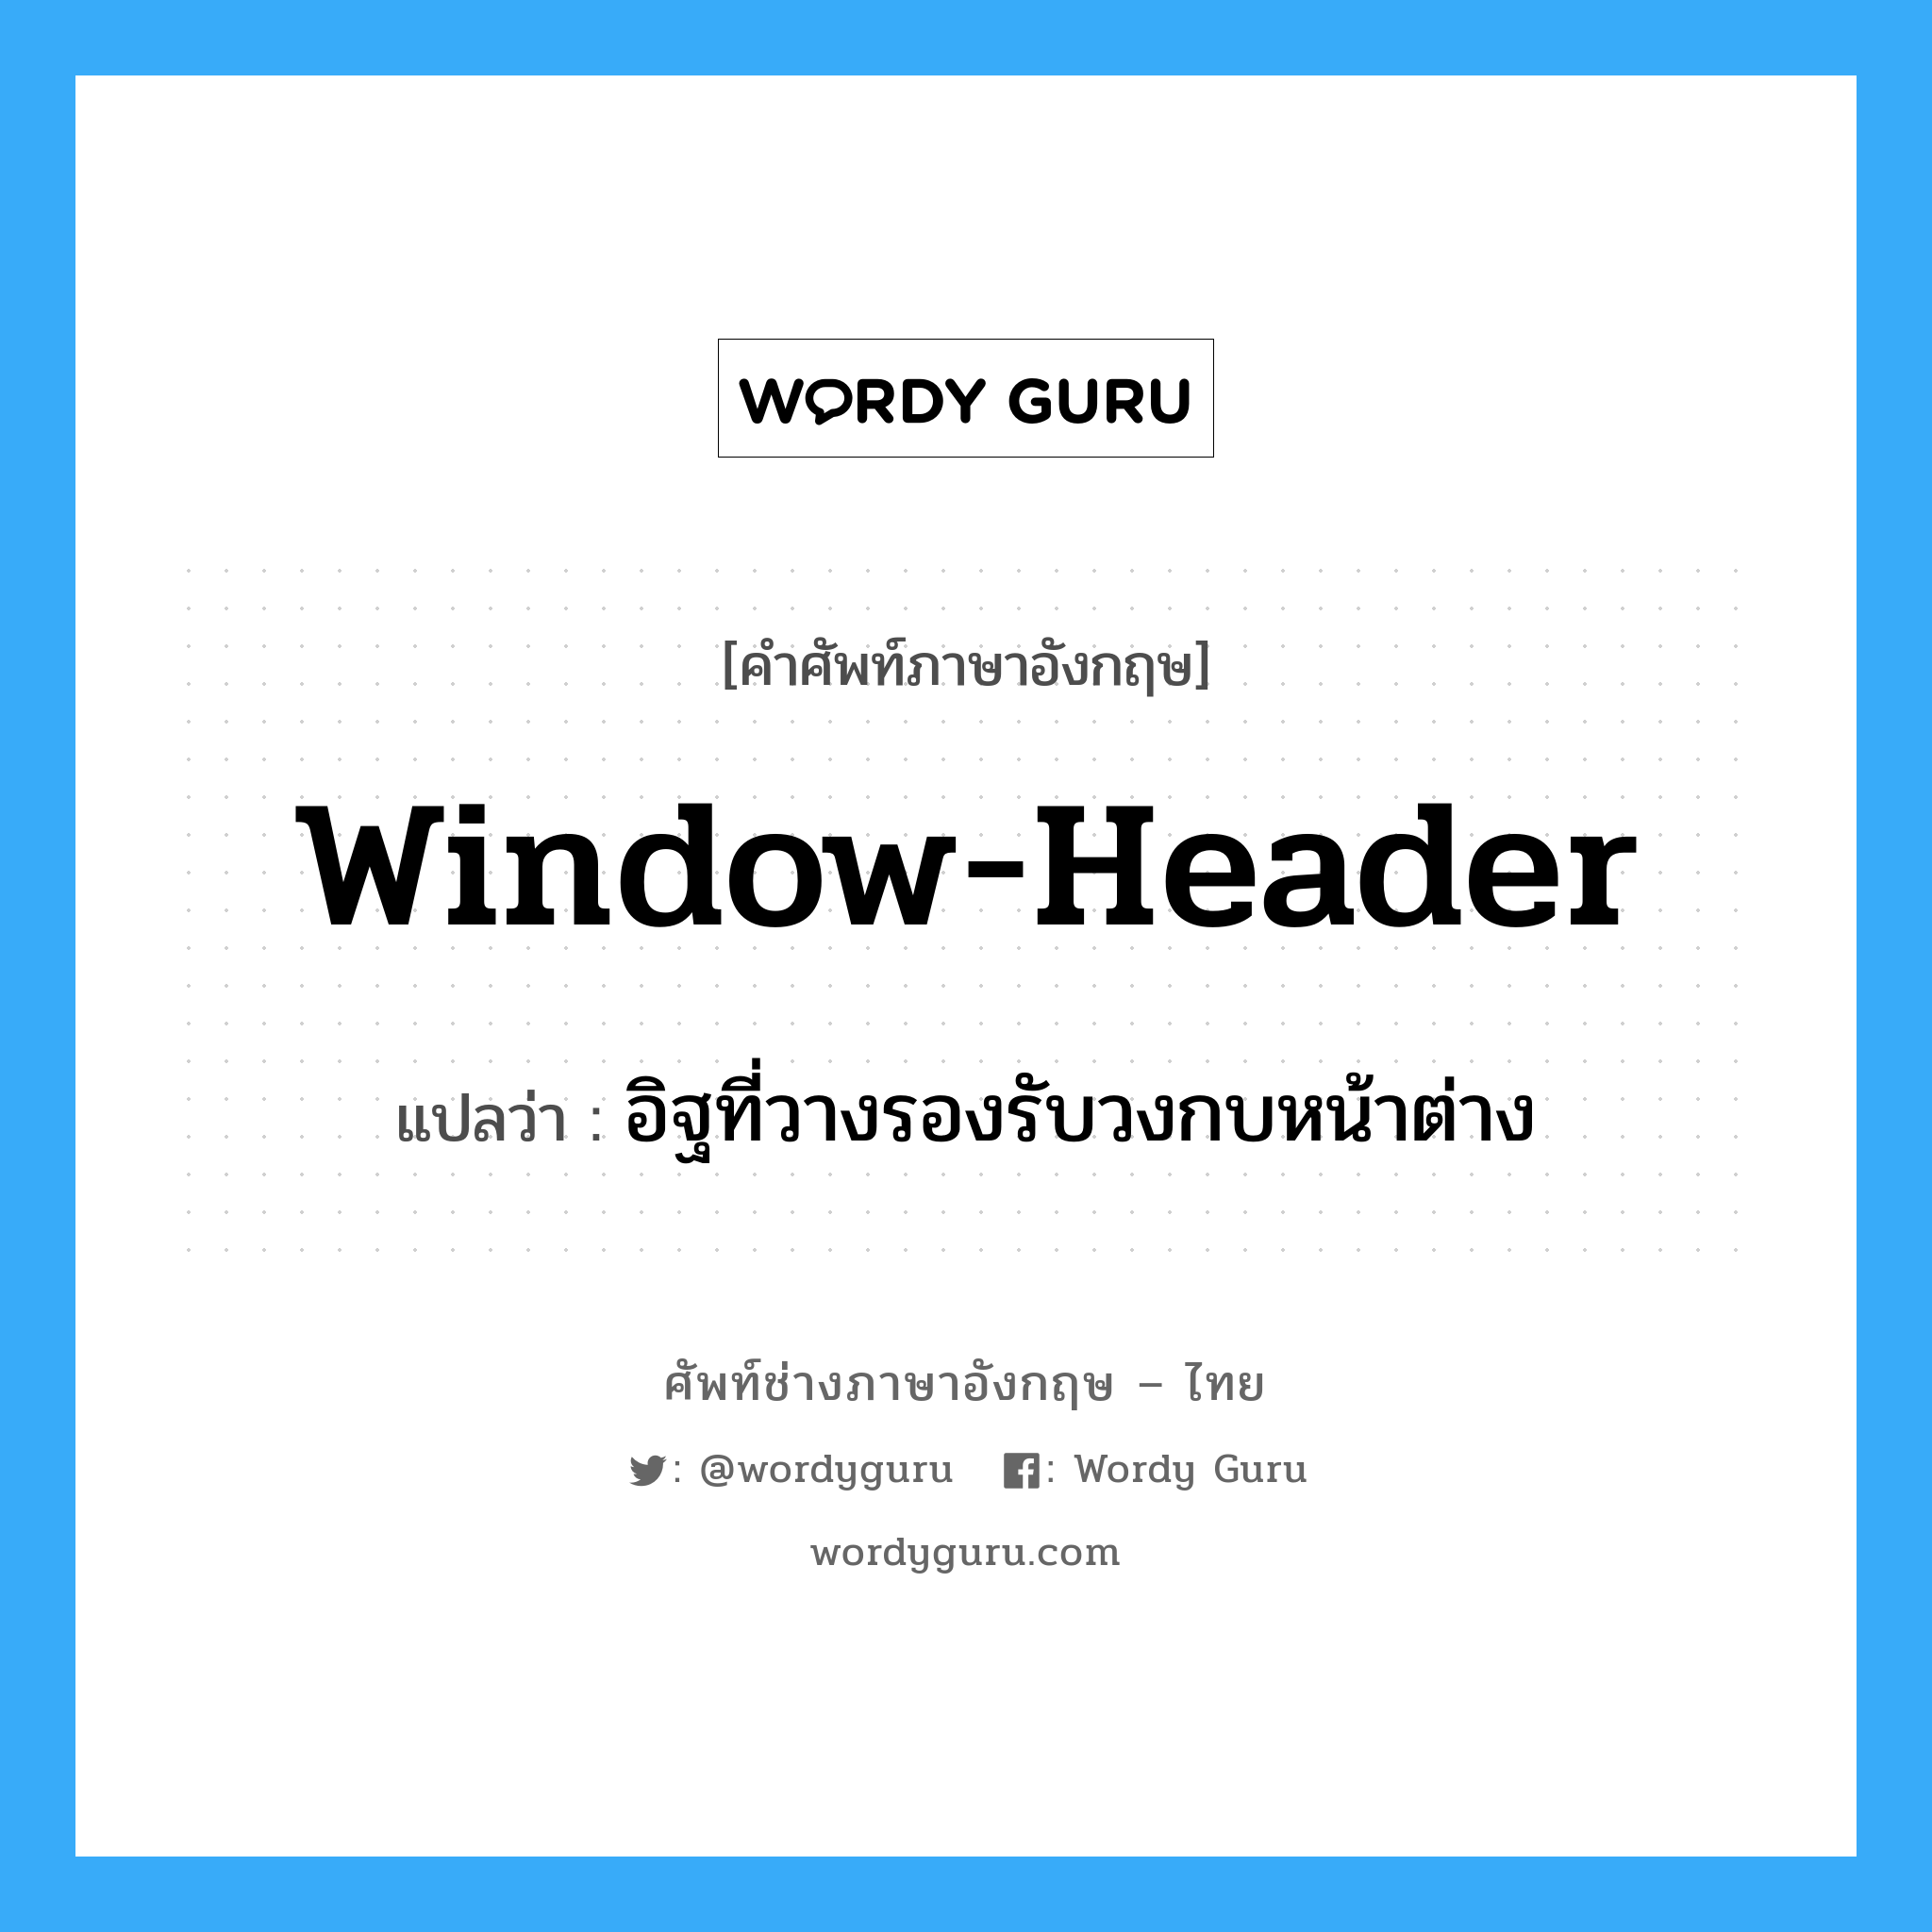 window-header แปลว่า?, คำศัพท์ช่างภาษาอังกฤษ - ไทย window-header คำศัพท์ภาษาอังกฤษ window-header แปลว่า อิฐที่วางรองรับวงกบหน้าต่าง